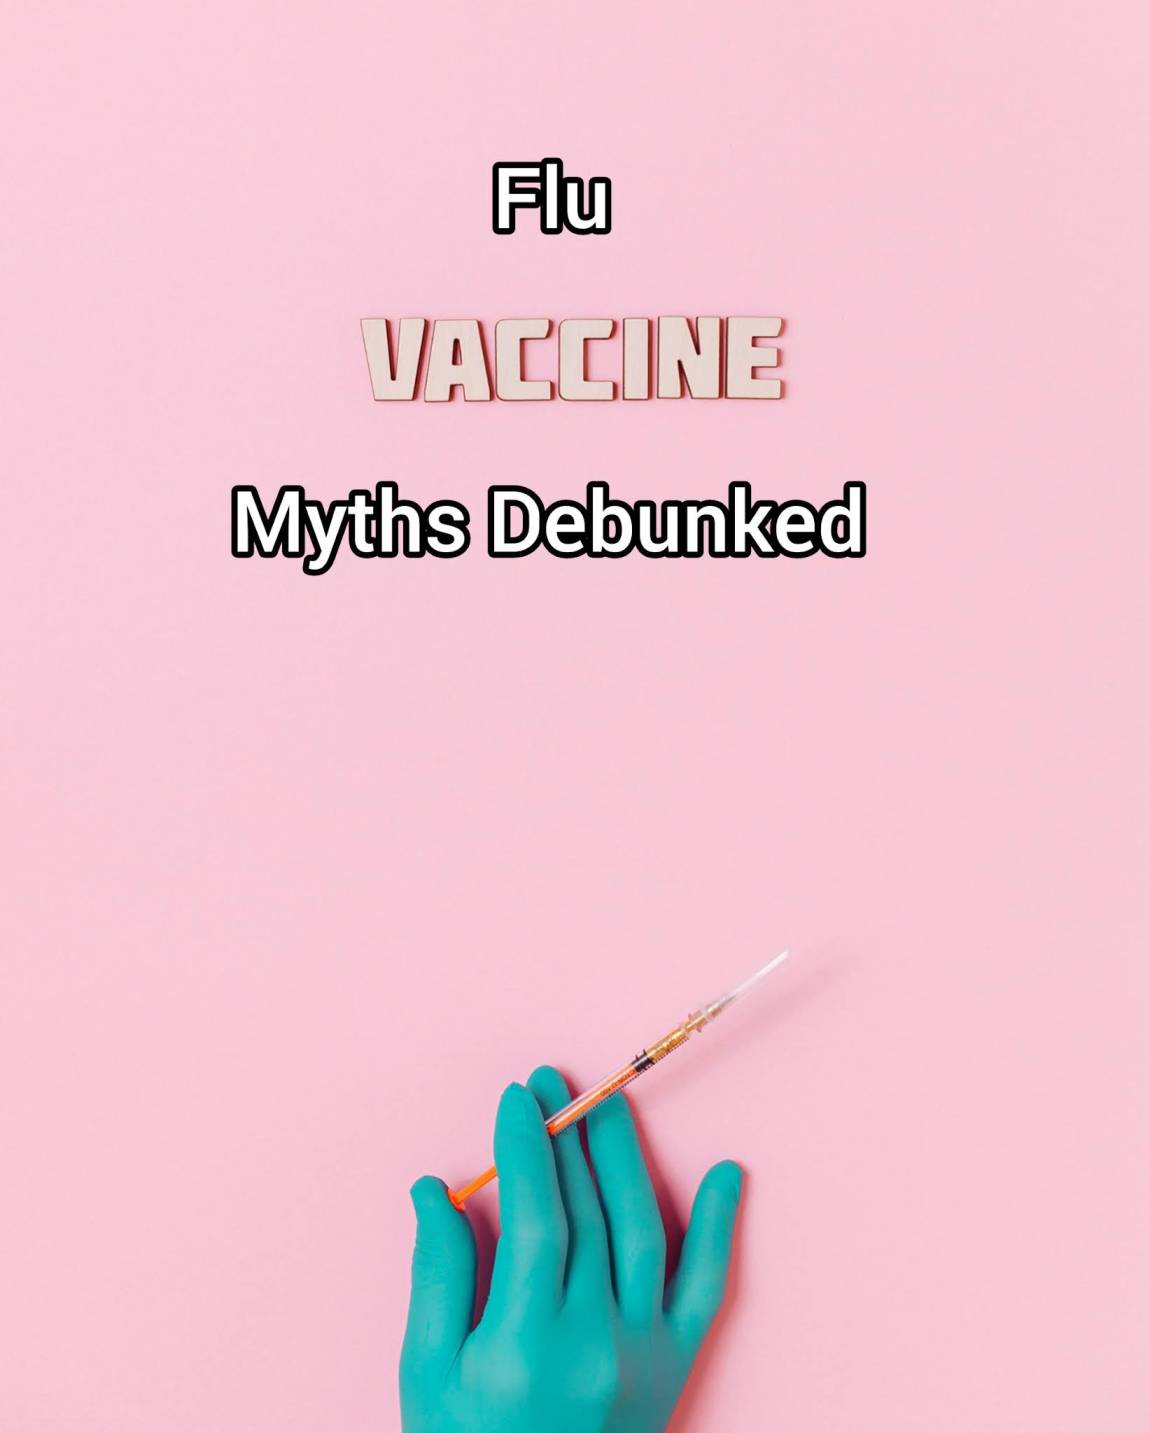 Flu Vaccine myths